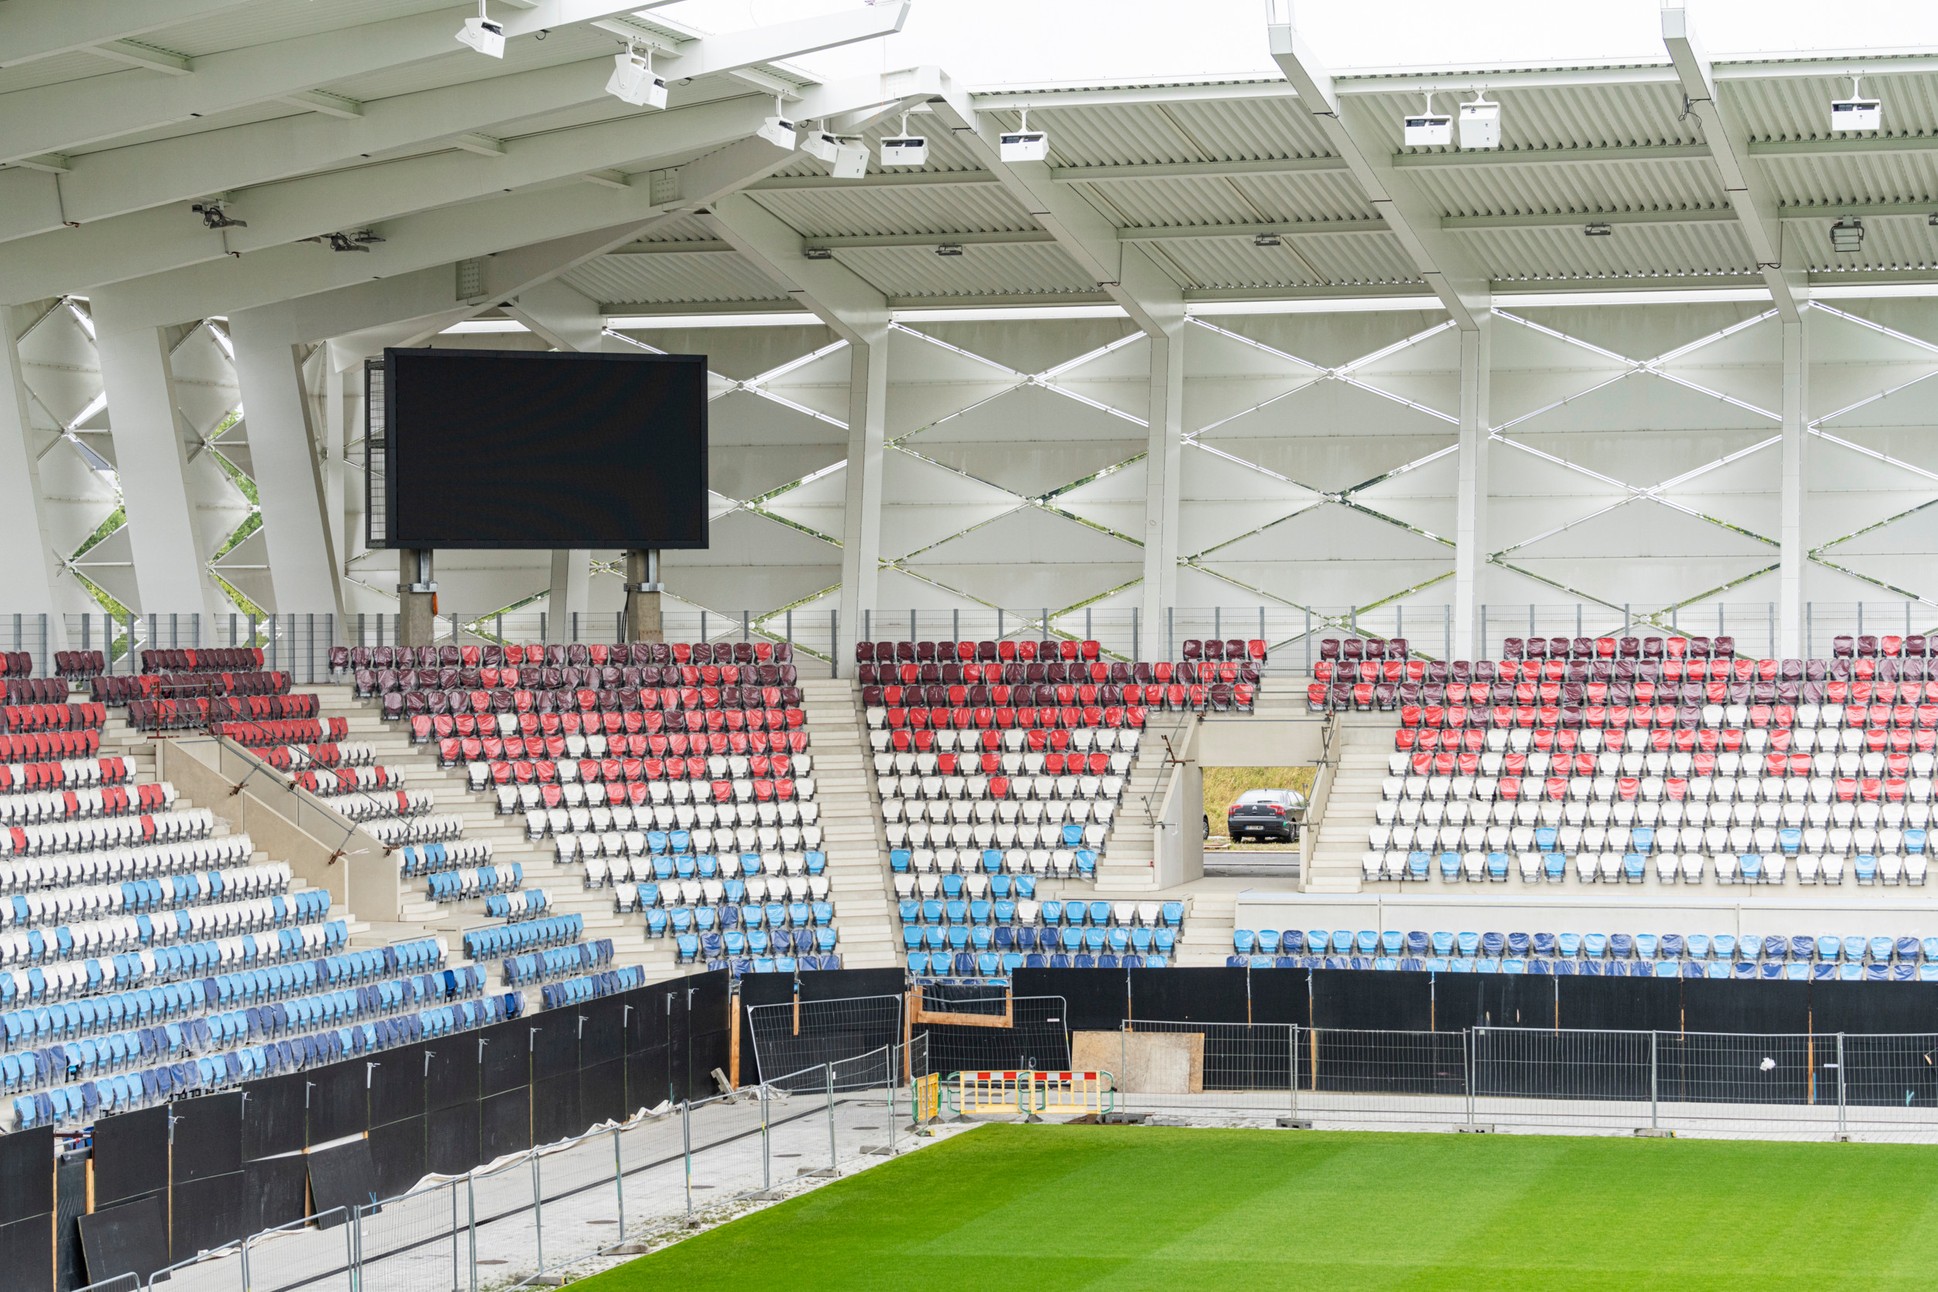 Daplast Seating equipa con asientos Avatar el Estadio de Luxemburgo